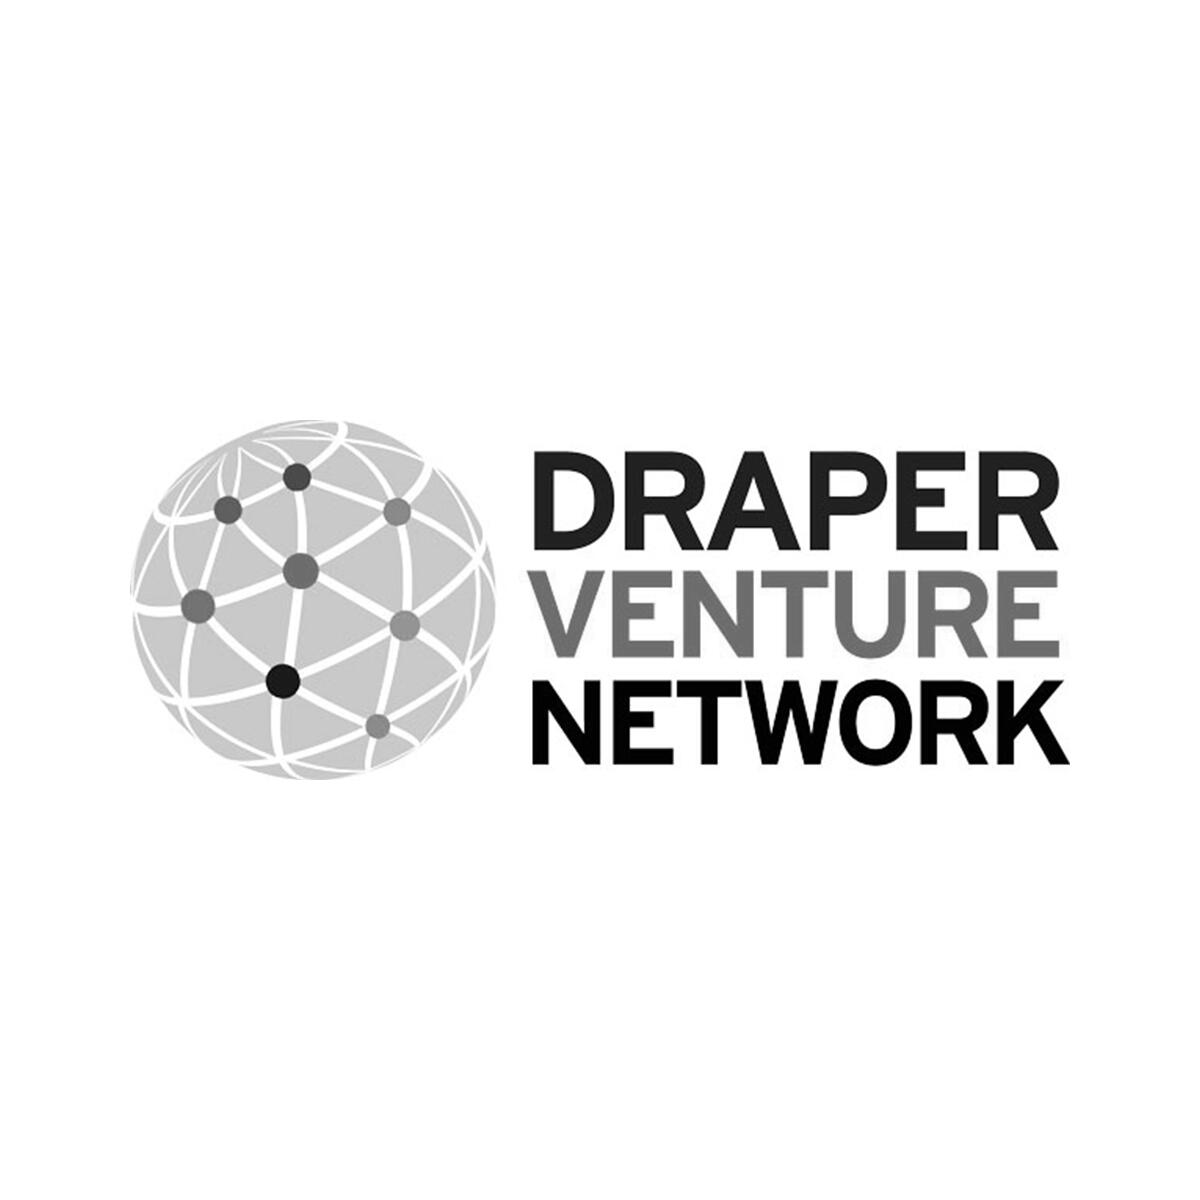 Draper Venture Network